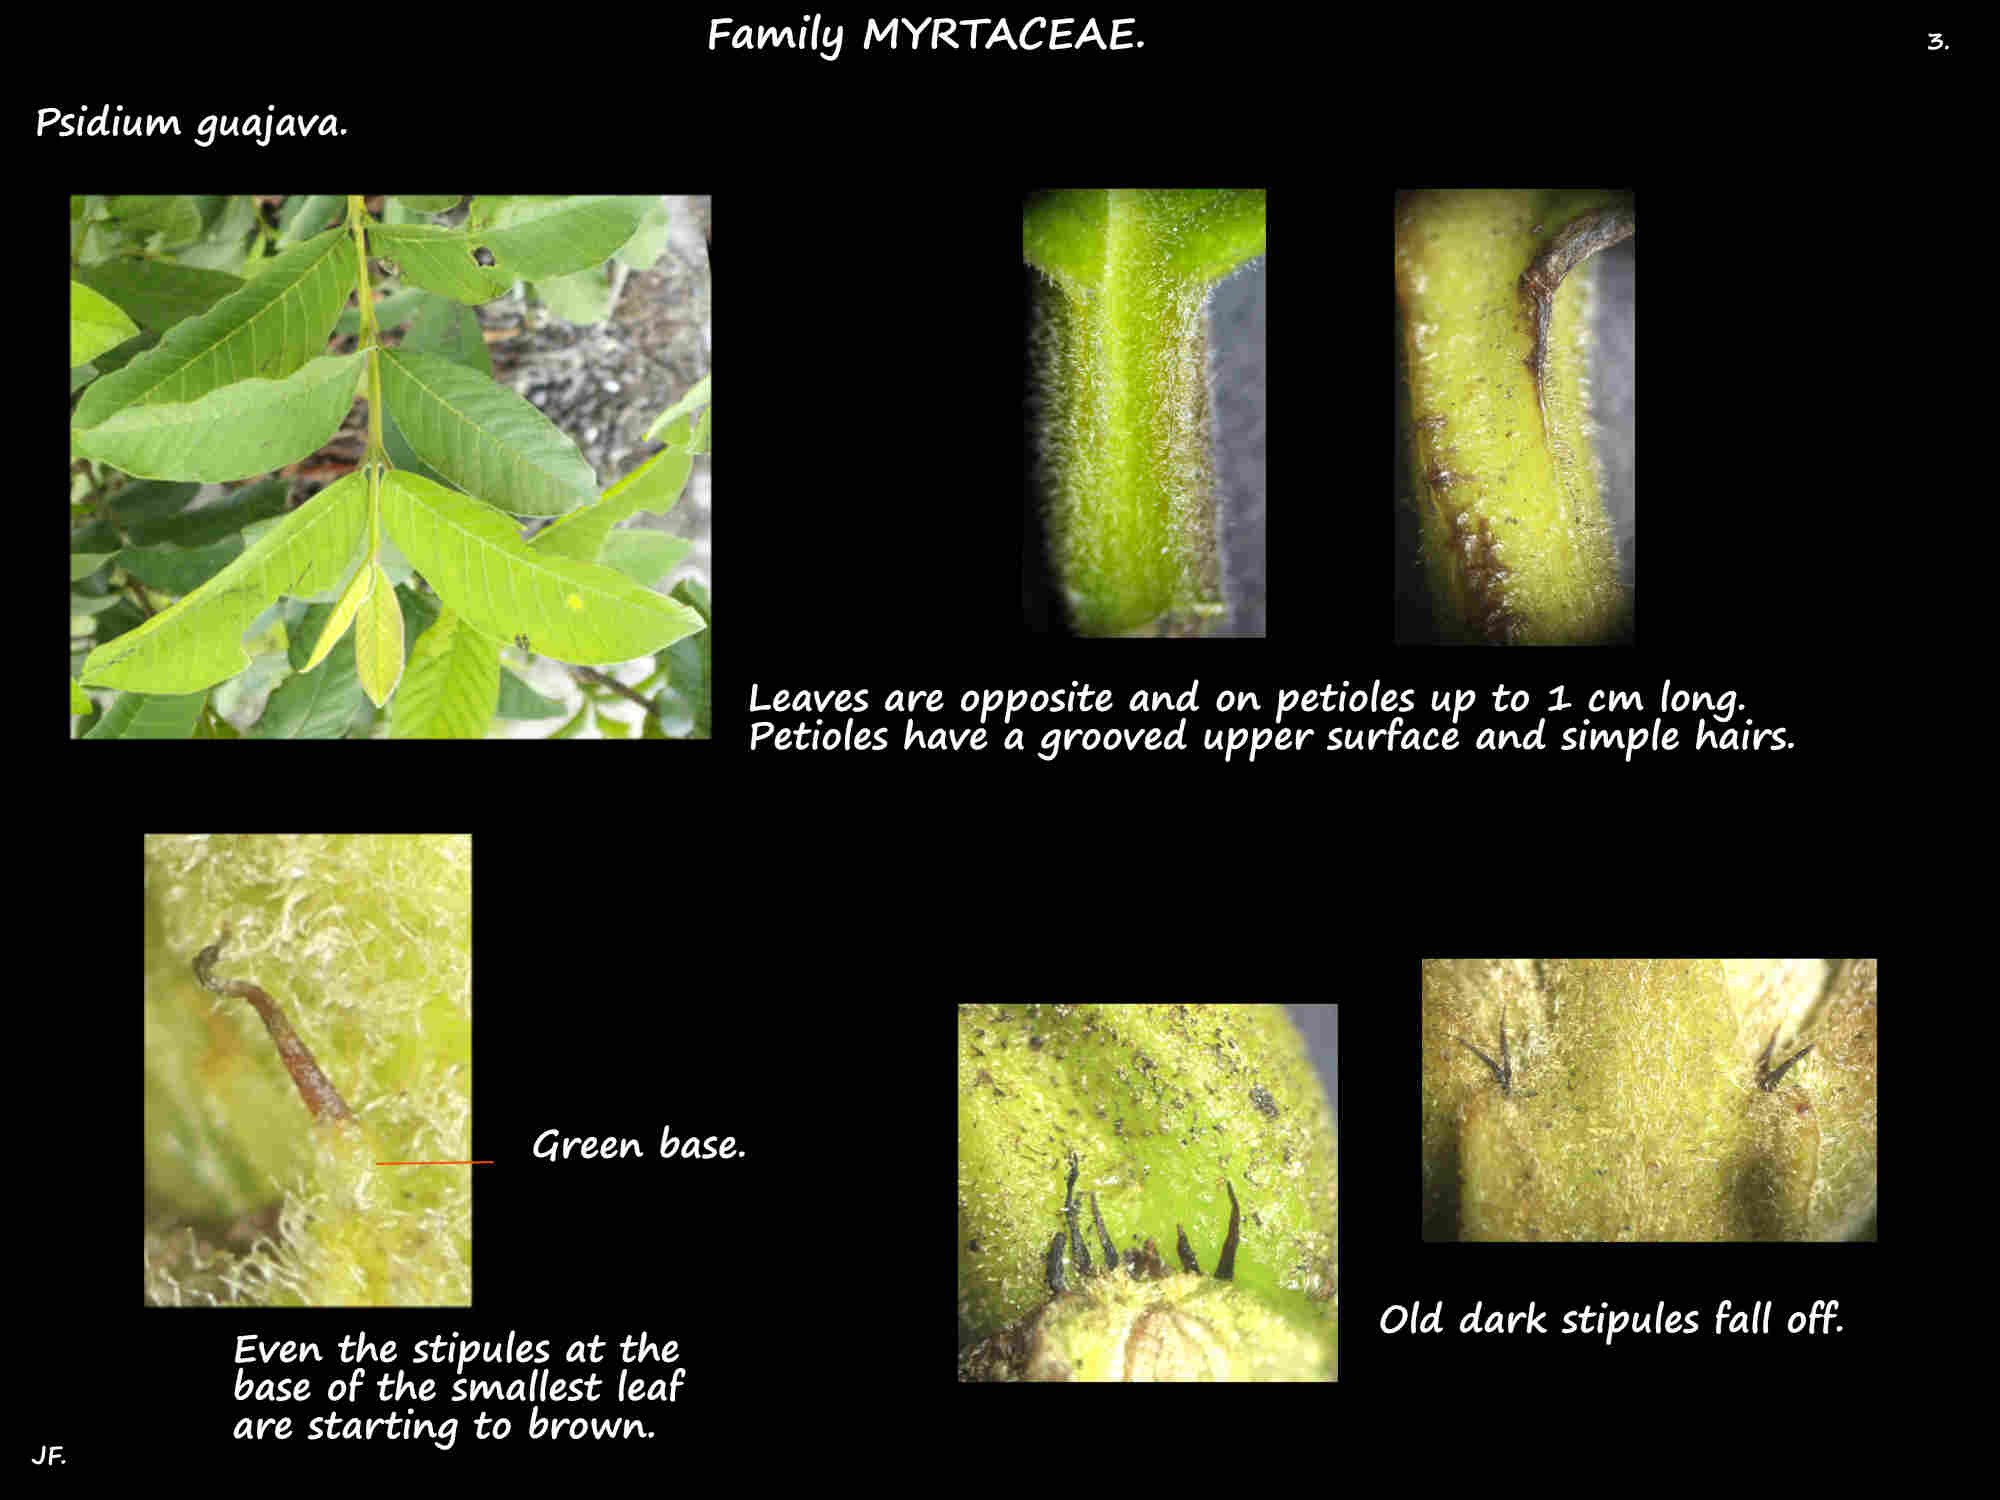 3 Opposite leaves & stipules of Psidium guajava